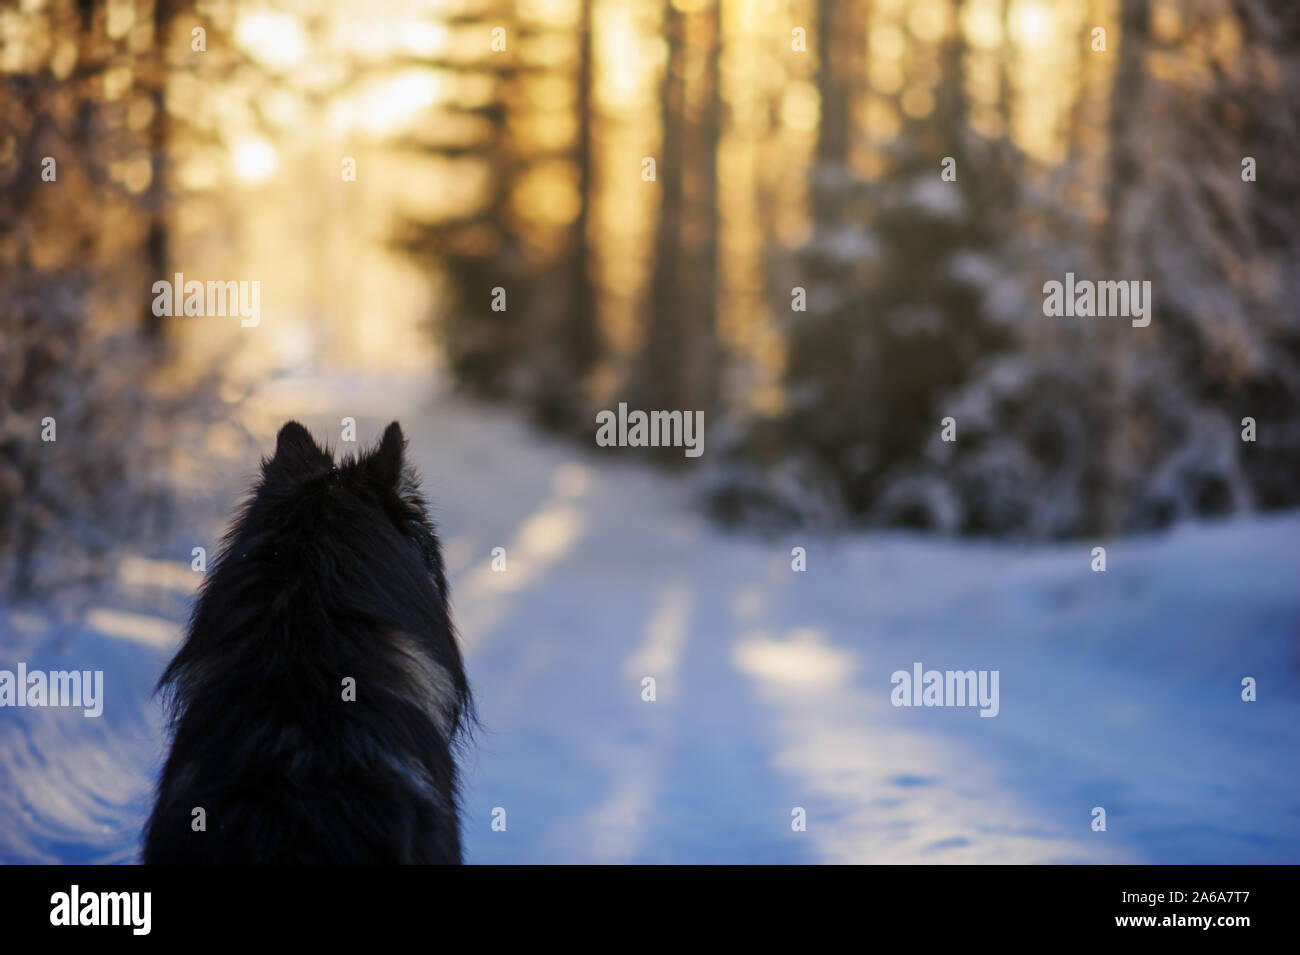 Il cane siede sulla neve e guarda in una foresta al tramonto. Freddo giorno d'inverno. Foto Stock